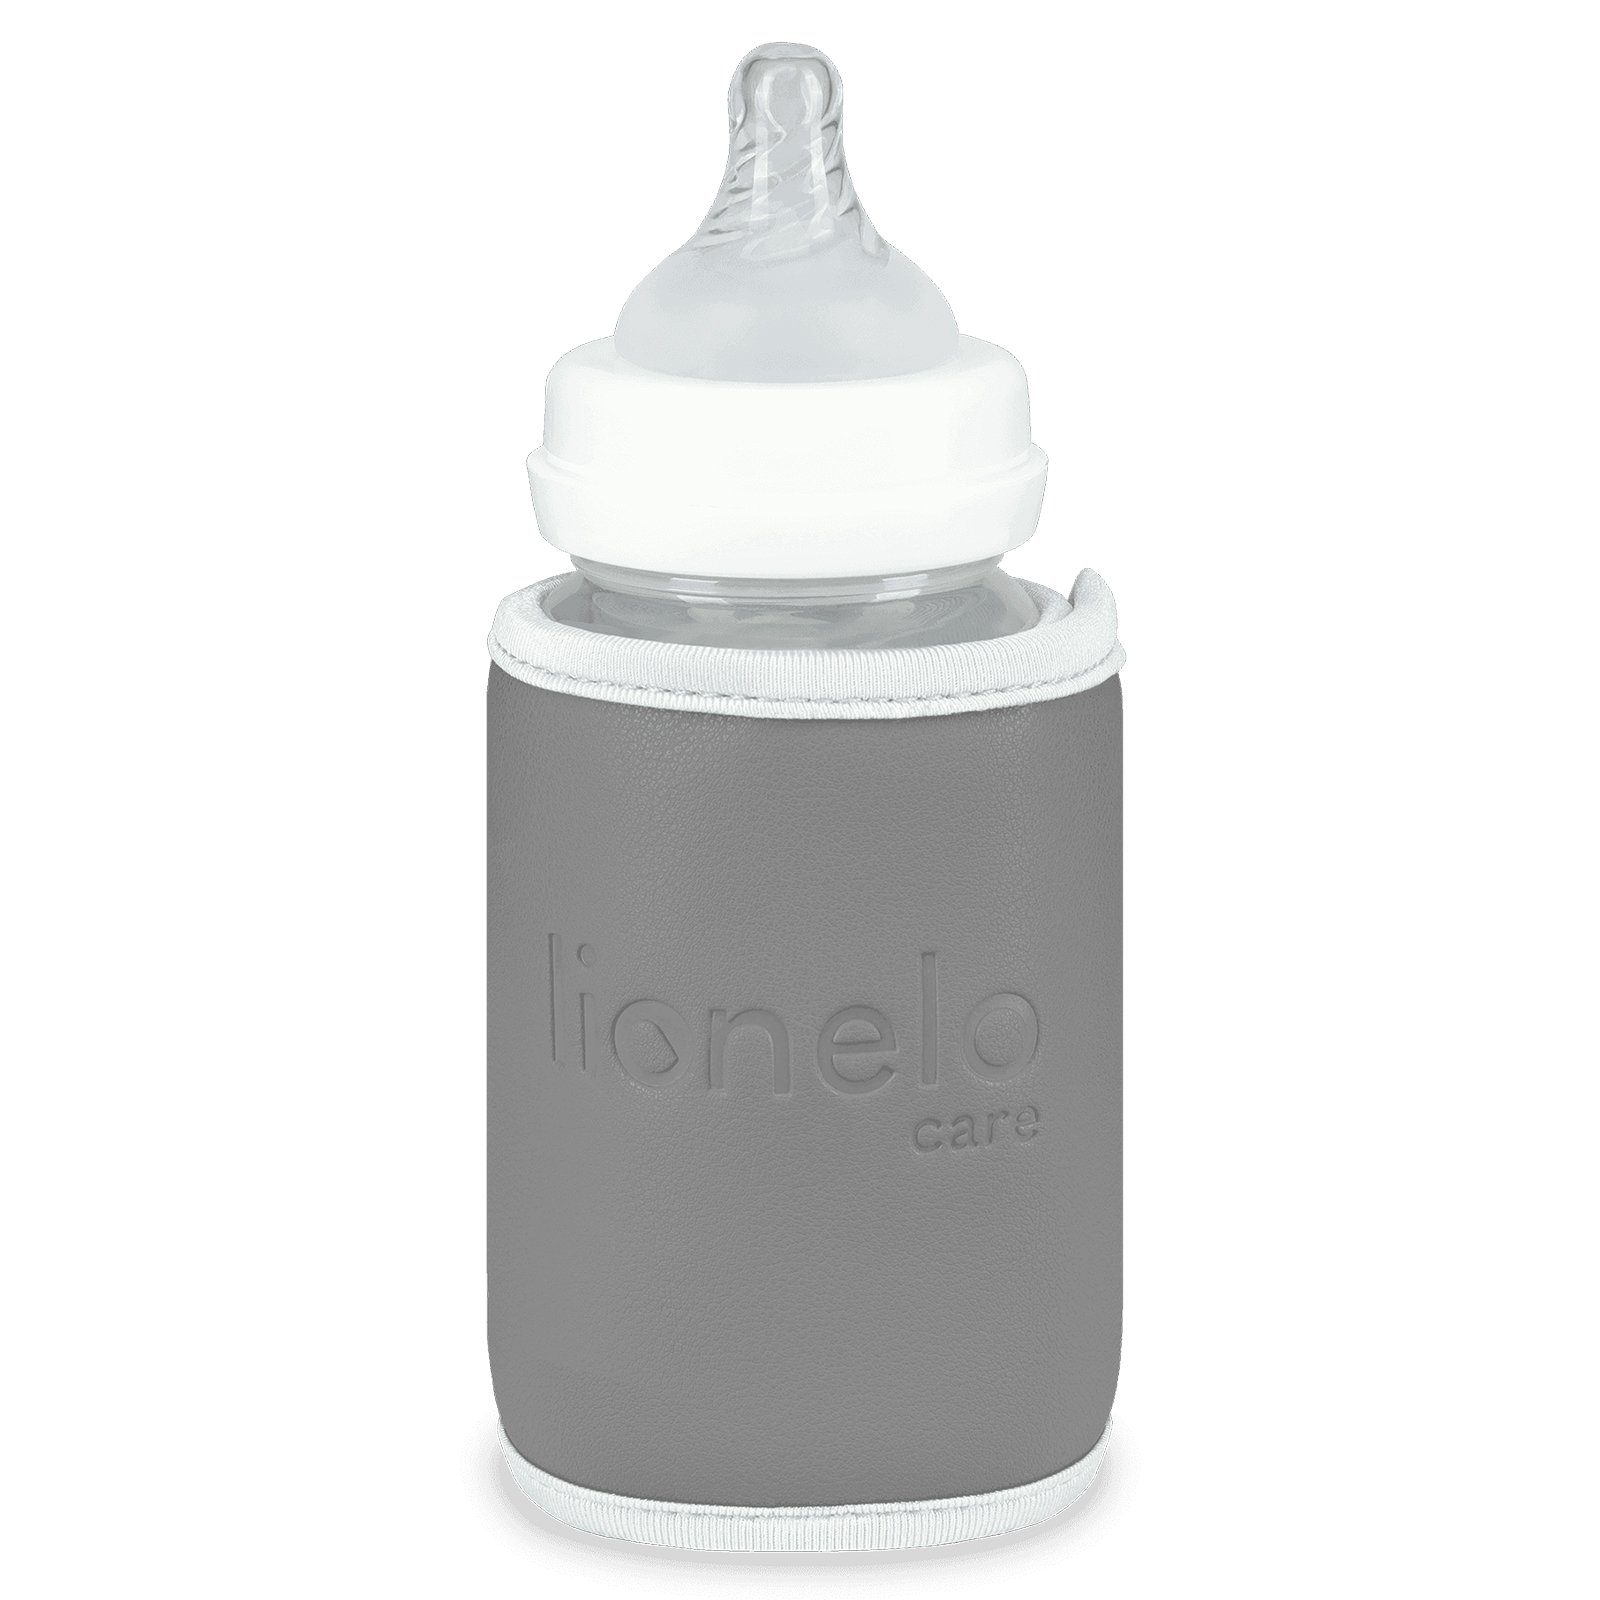 Passt Getränke zu für lang LOC-THERMUP Overmax GO der über in Anwendung Flaschen, SILVER, meisten Aufladen bis 24 GREY Stunden Hält Babyflaschenwärmer die warm, Sicher USB-Kabel,